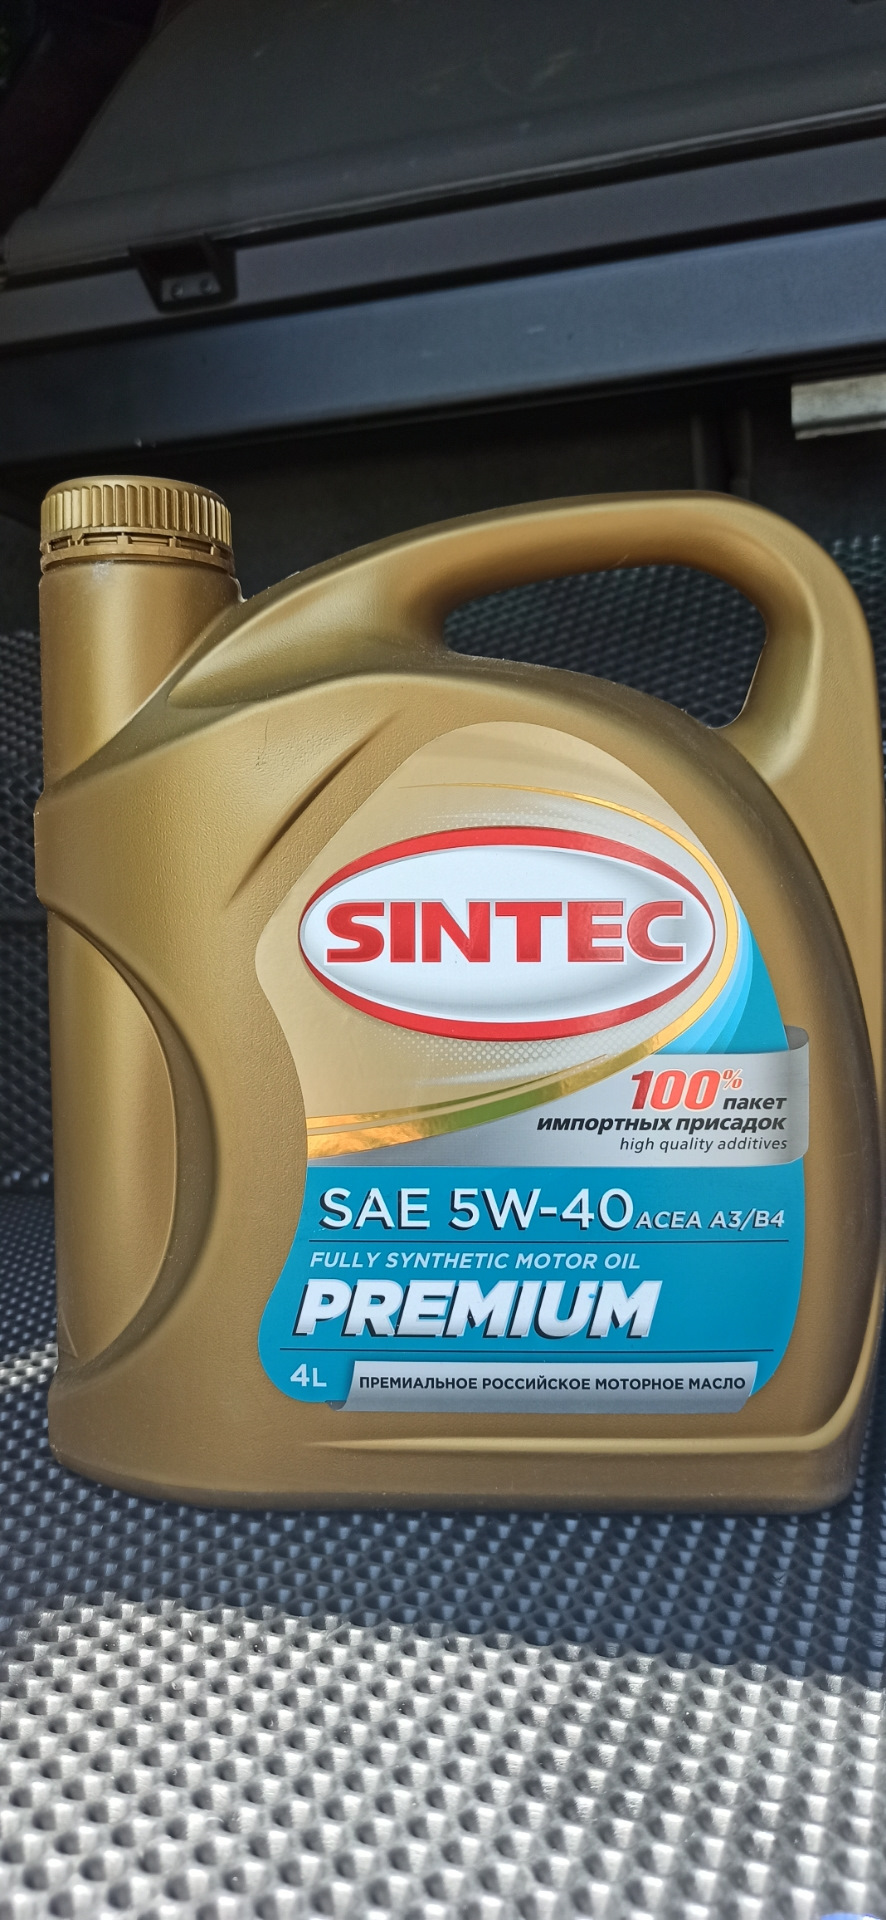 Масло sintec premium 9000 5w 40. Sintec Premium 5w-40. Синтек премиум 9000 5w40. Синтек турбодизель 5/40. Sintec Premium 9000 5w-40 a3/b4 SN/CF.